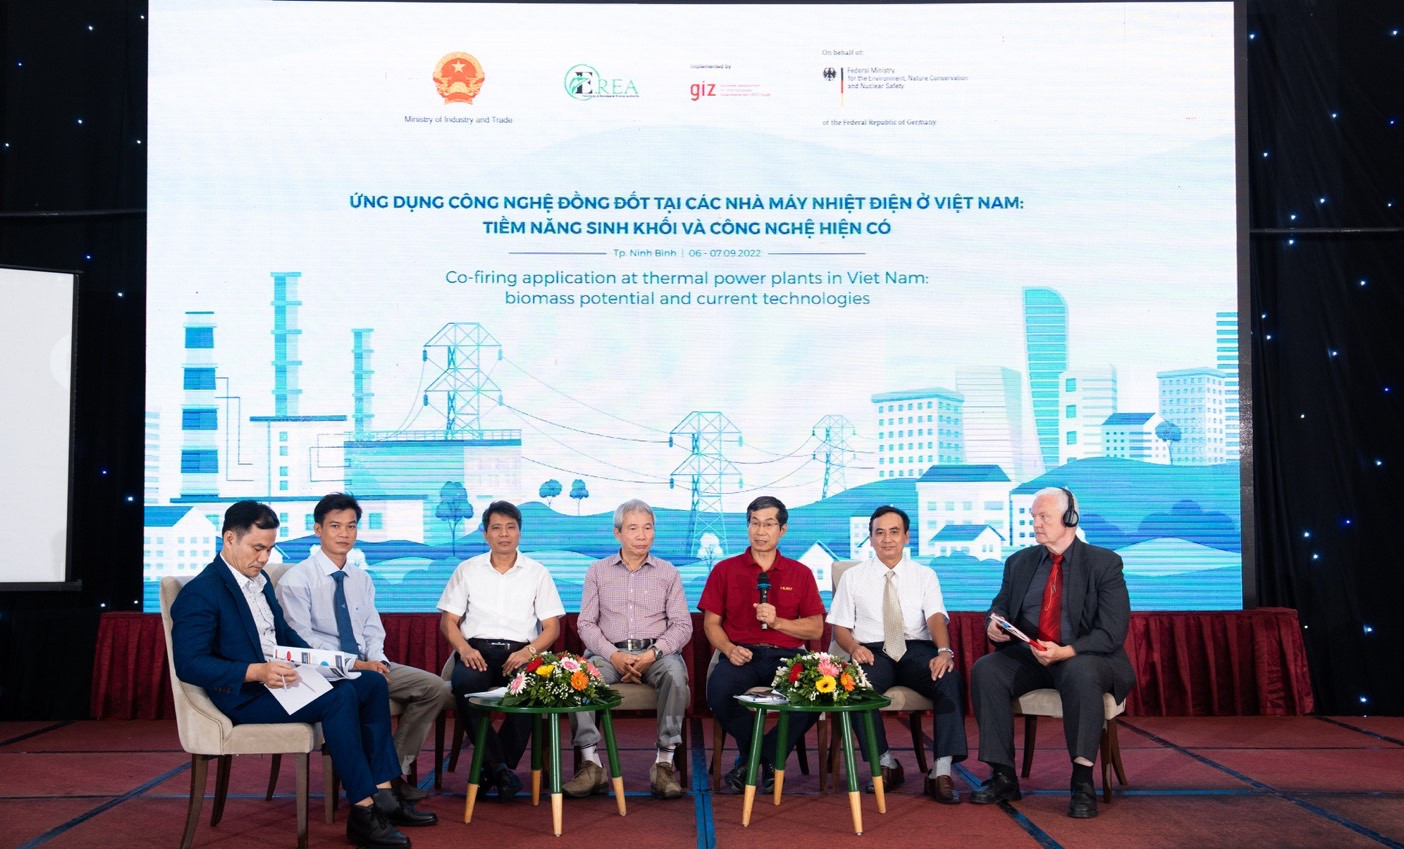 Trong khuôn khổ dự án BEM, các chuyên gia thảo luận về ứng dụng công nghệ đồng đốt tại các nhà máy nhiệt điện ở Việt Nam (Nguồn GIZ)